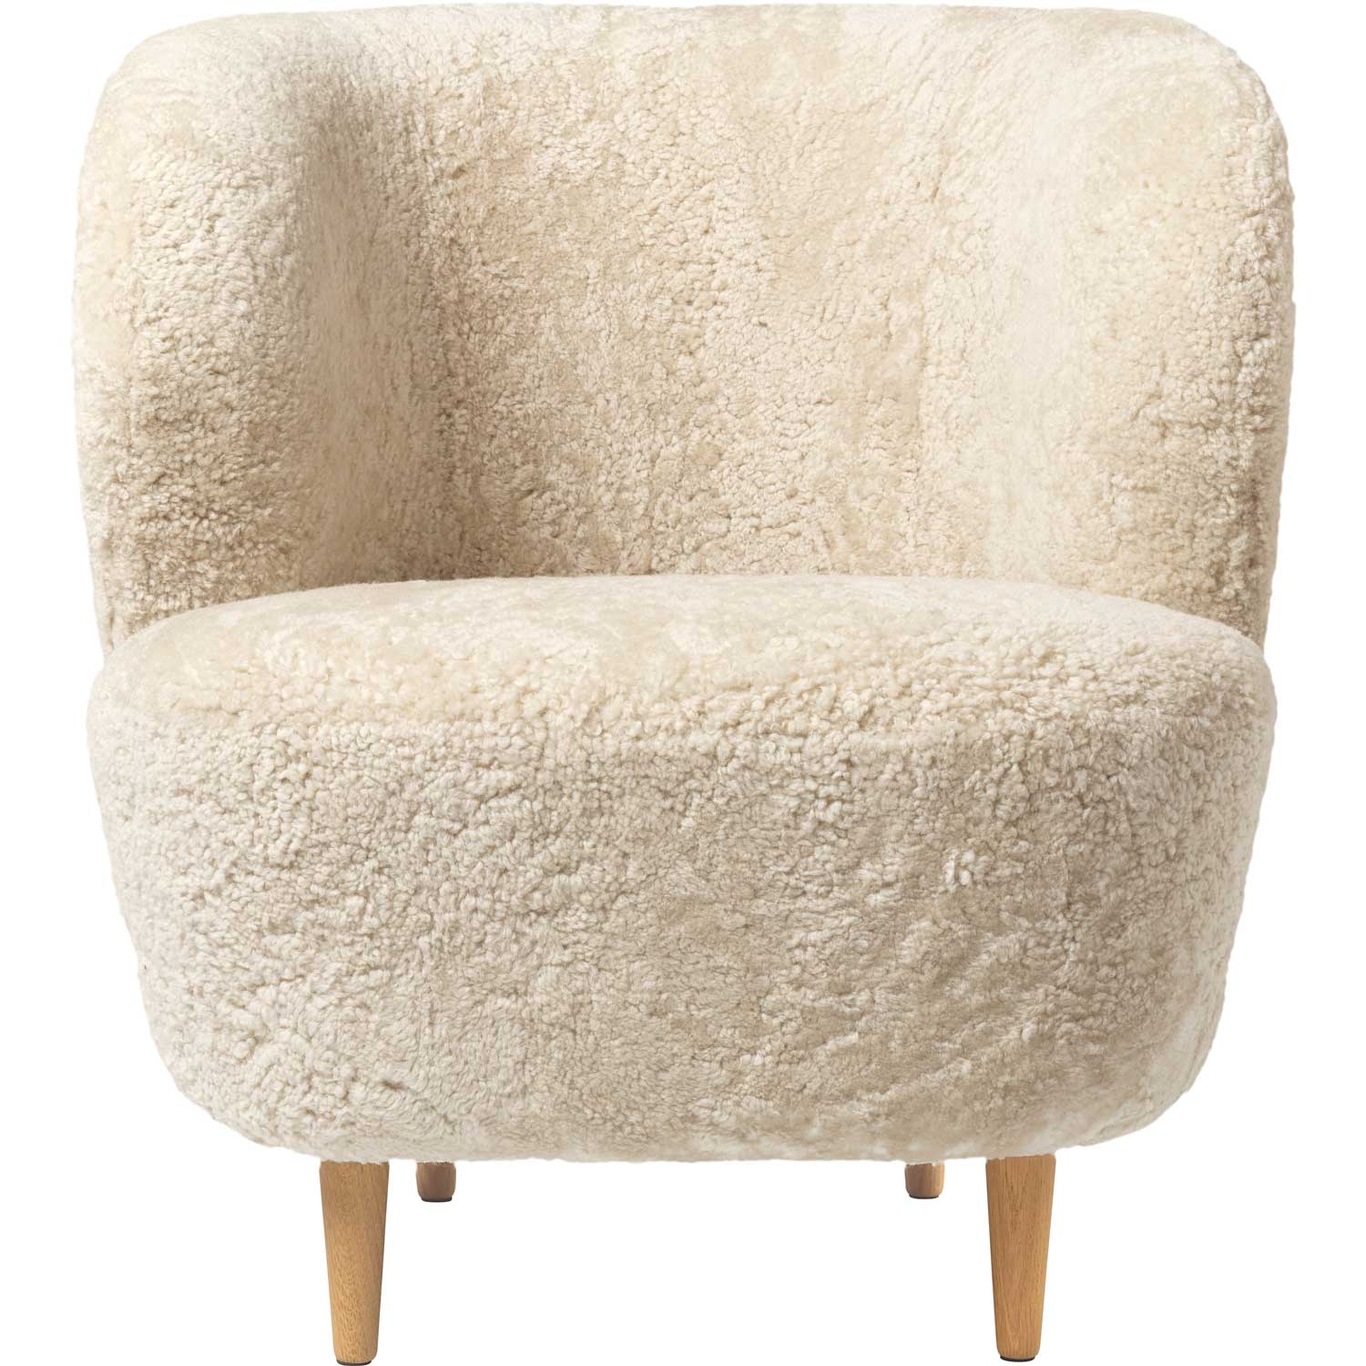 Stay Lounge Chair Sheepskin Moonlight/Oak